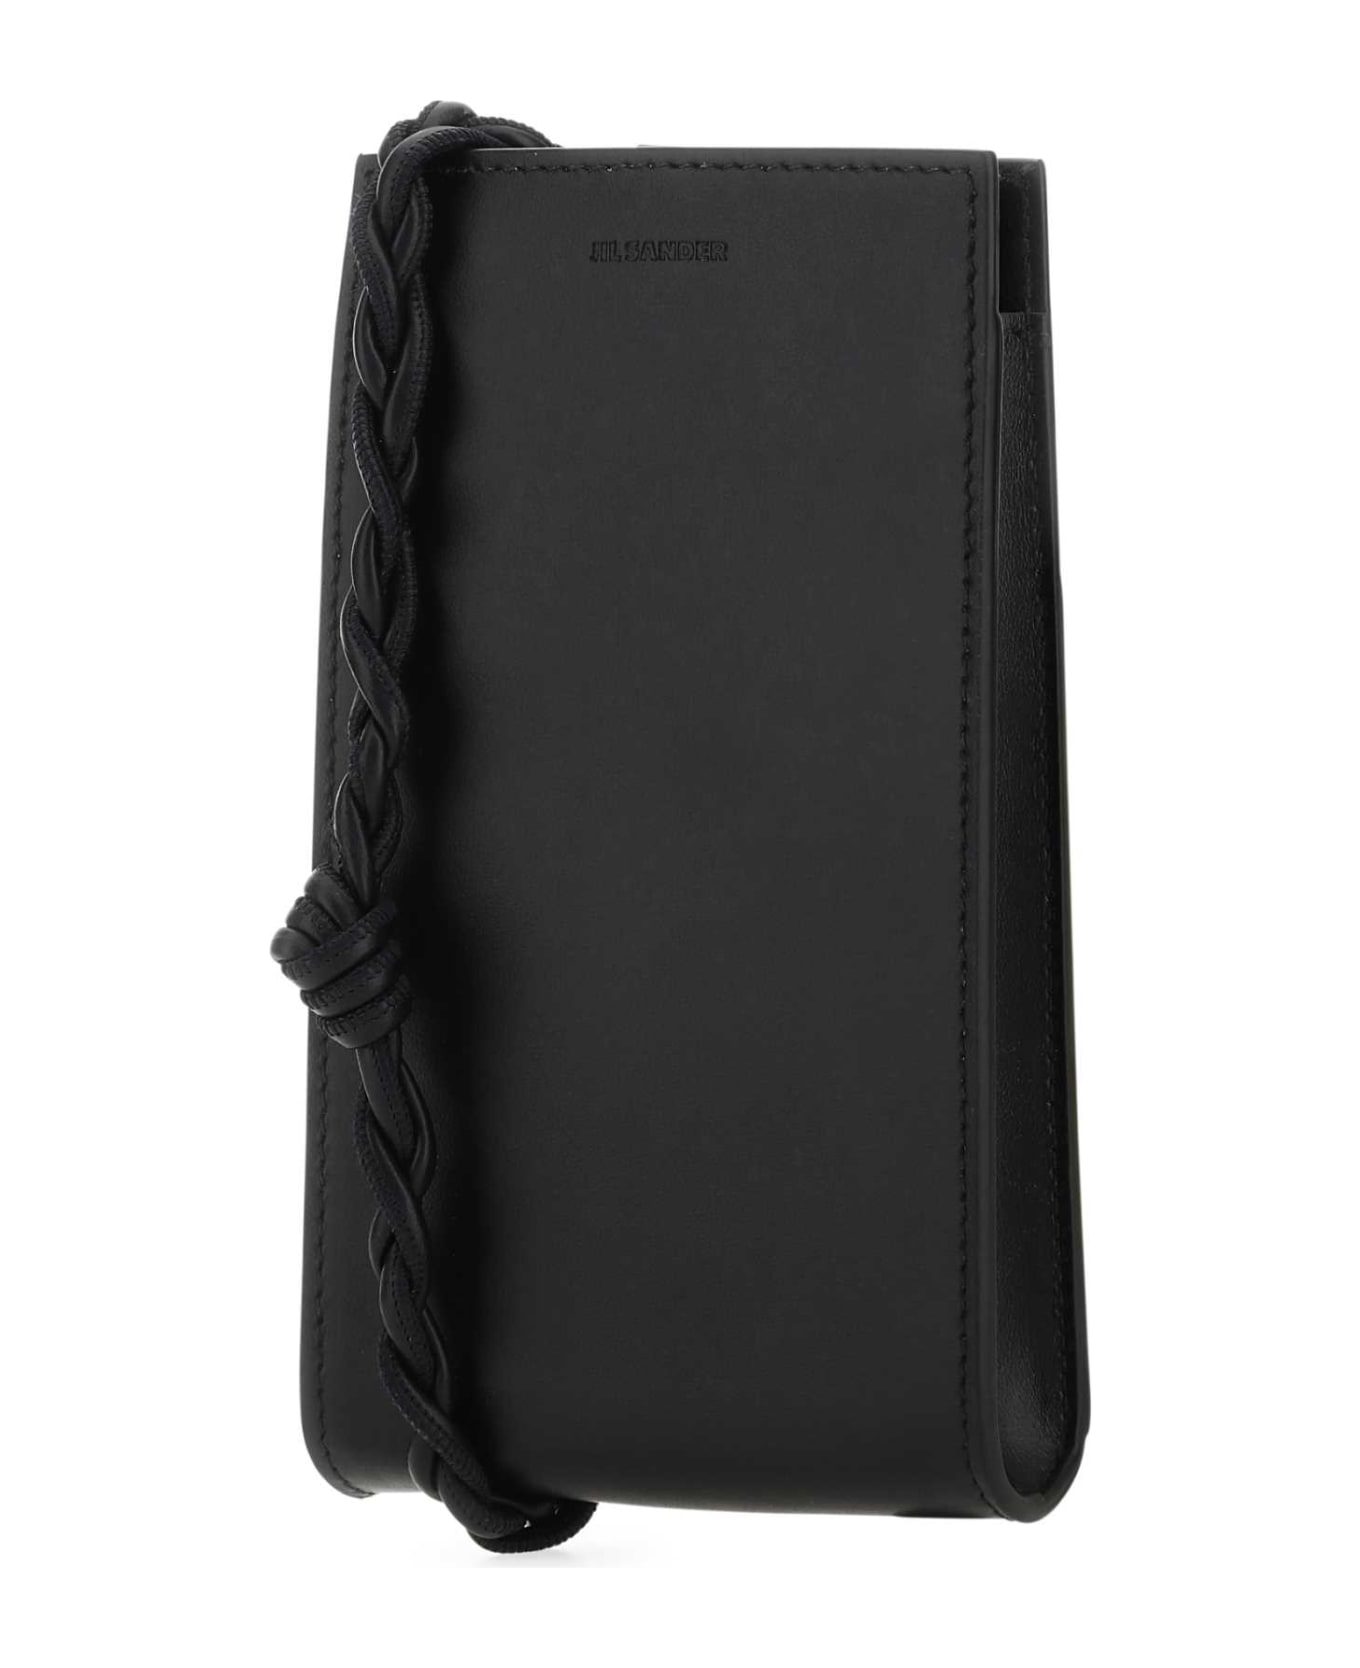 Jil Sander Black Leather Phone Case - 001